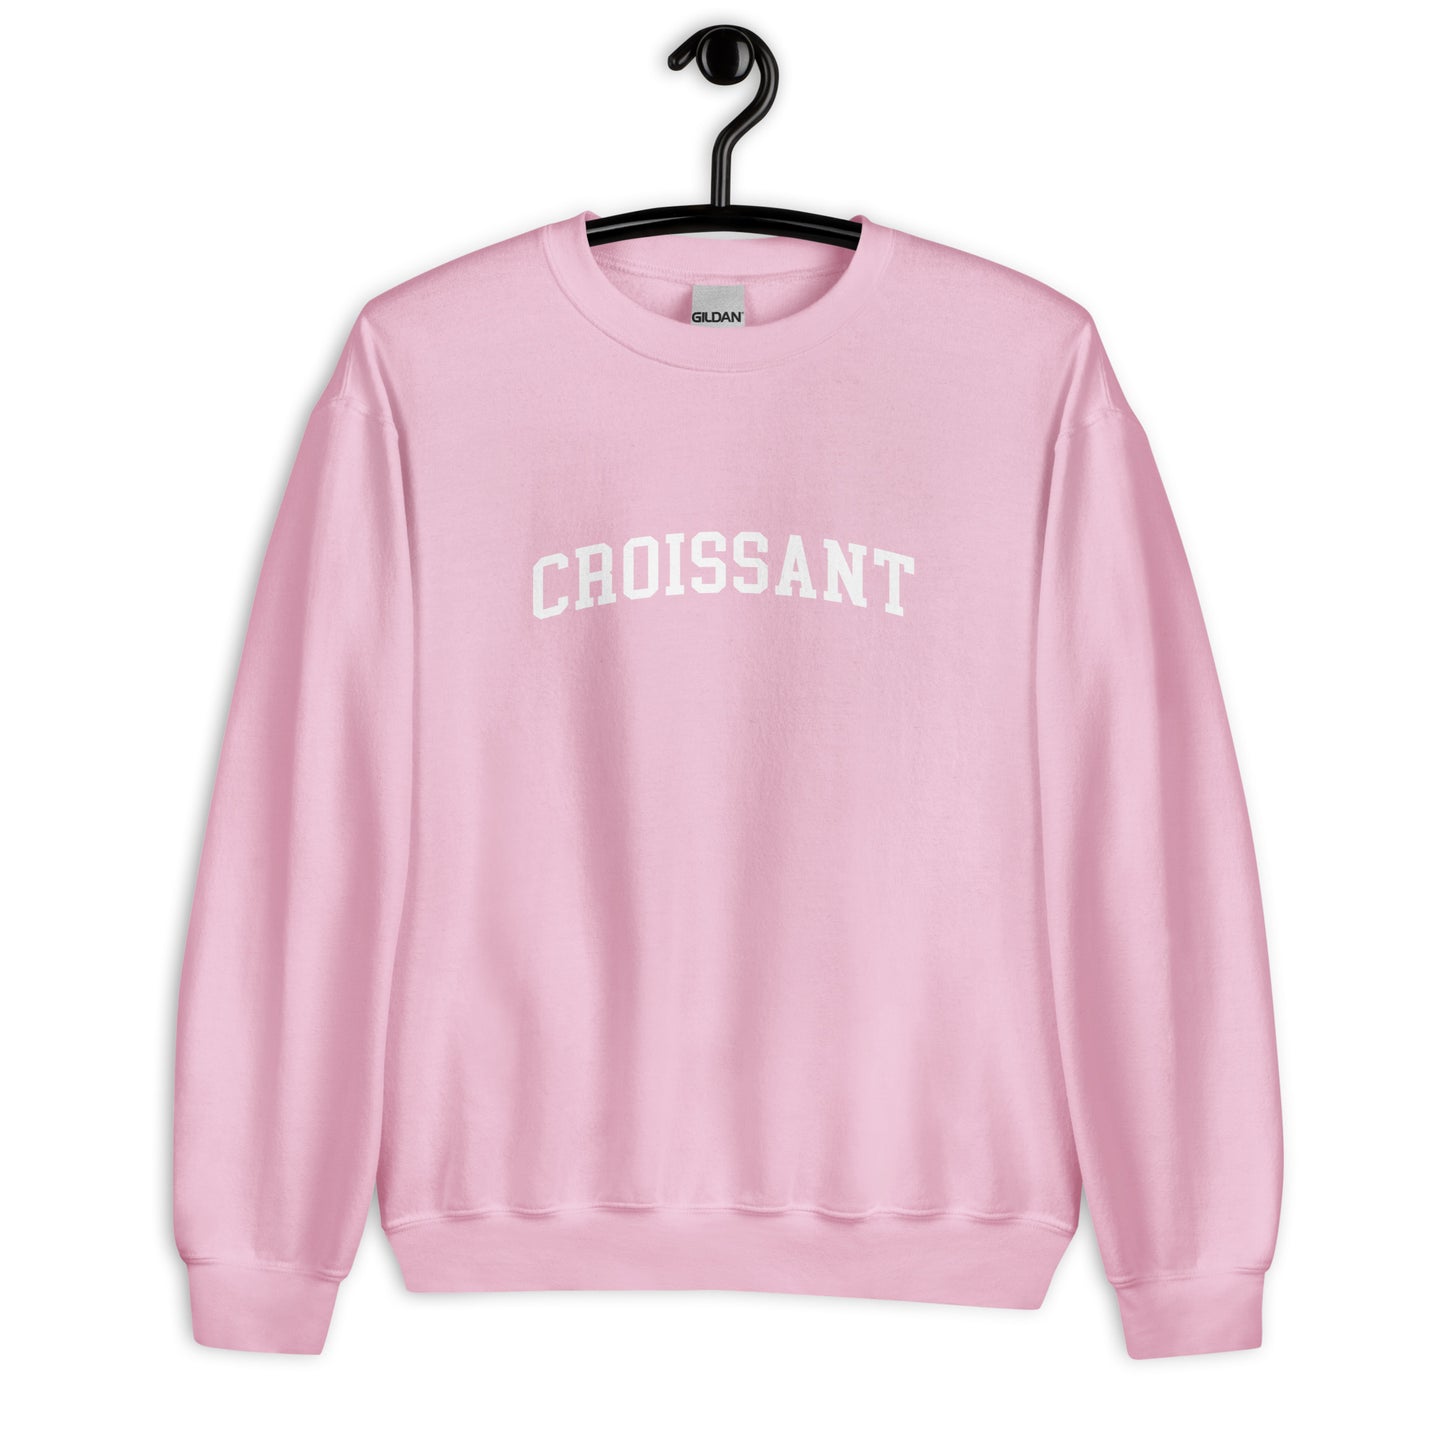 Croissant Sweatshirt - Arched Font